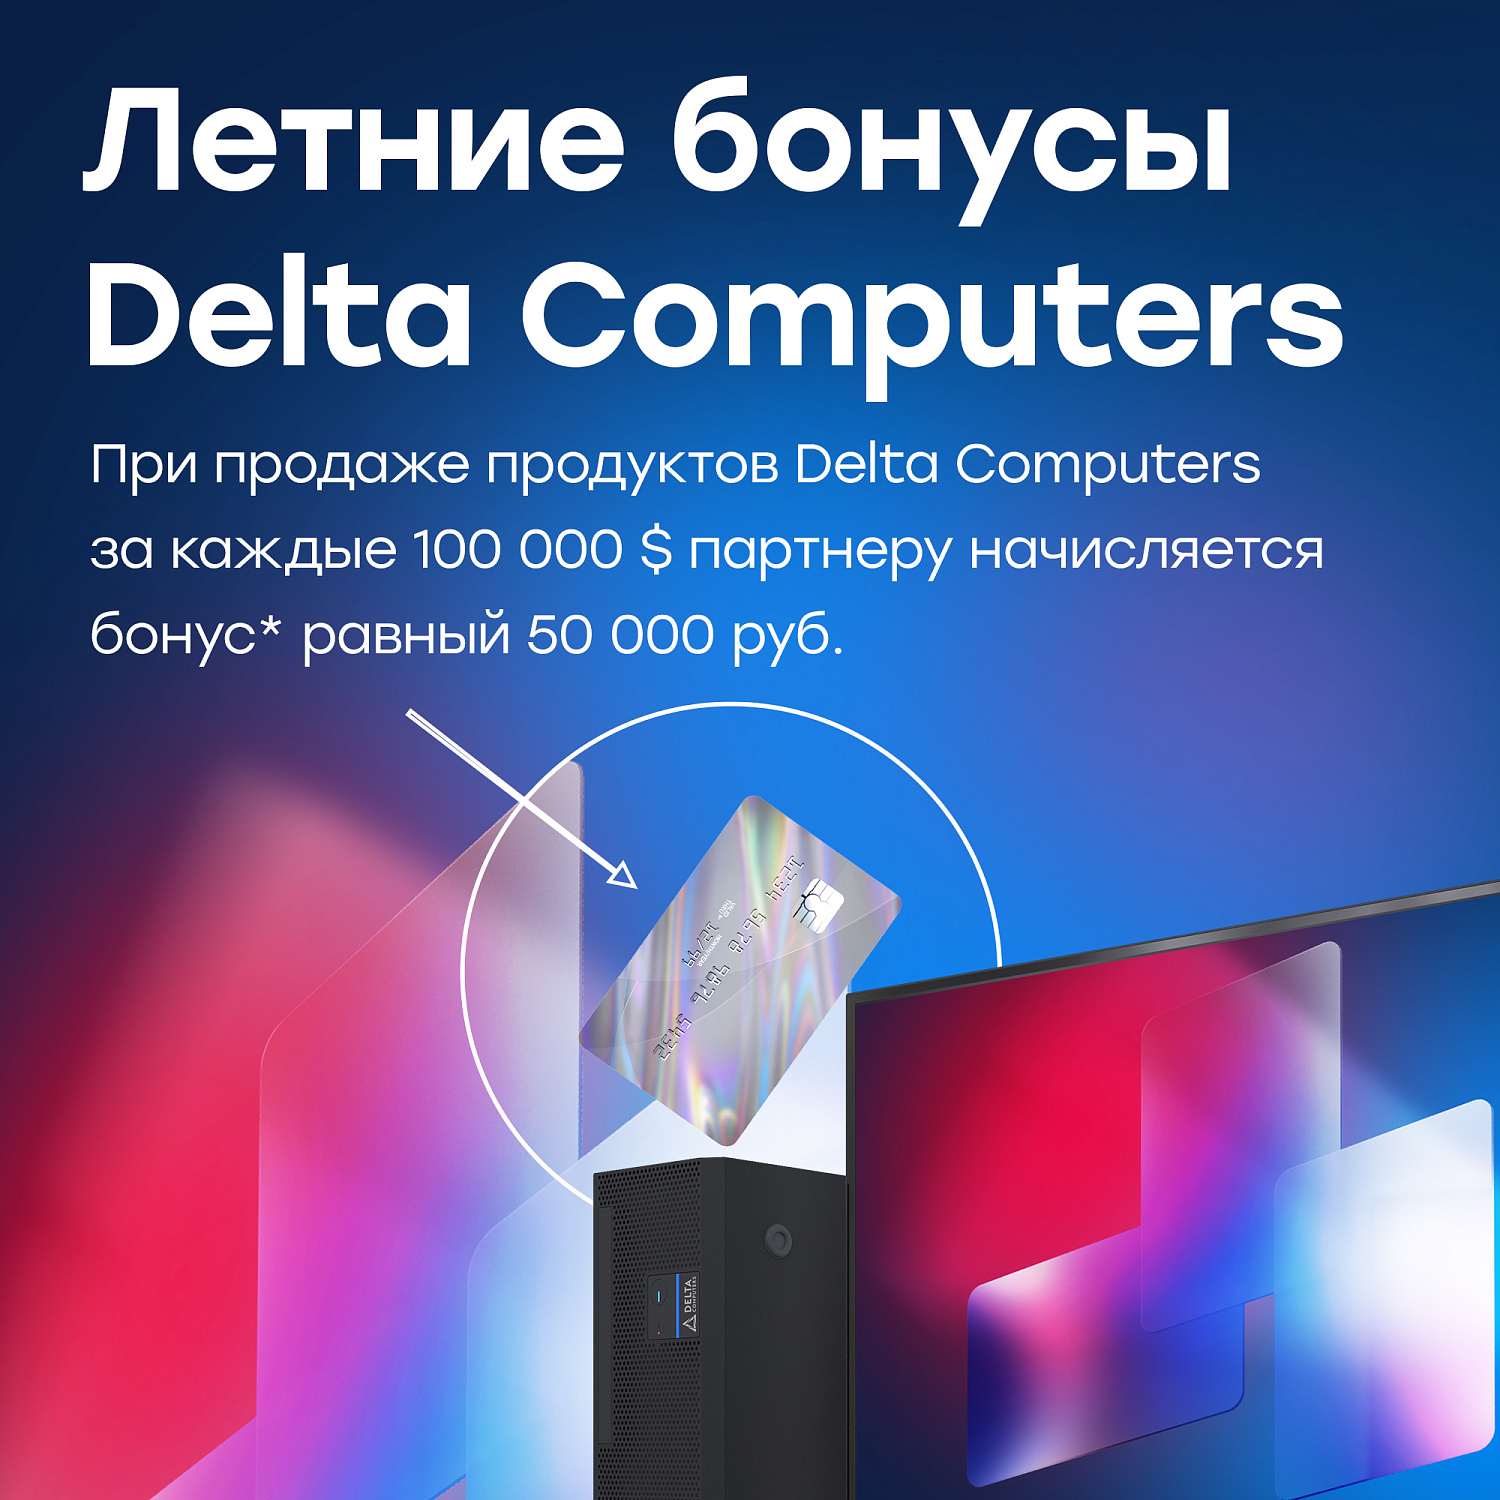 Летние бонусы от Delta Computers – с выгодой для партнеров!